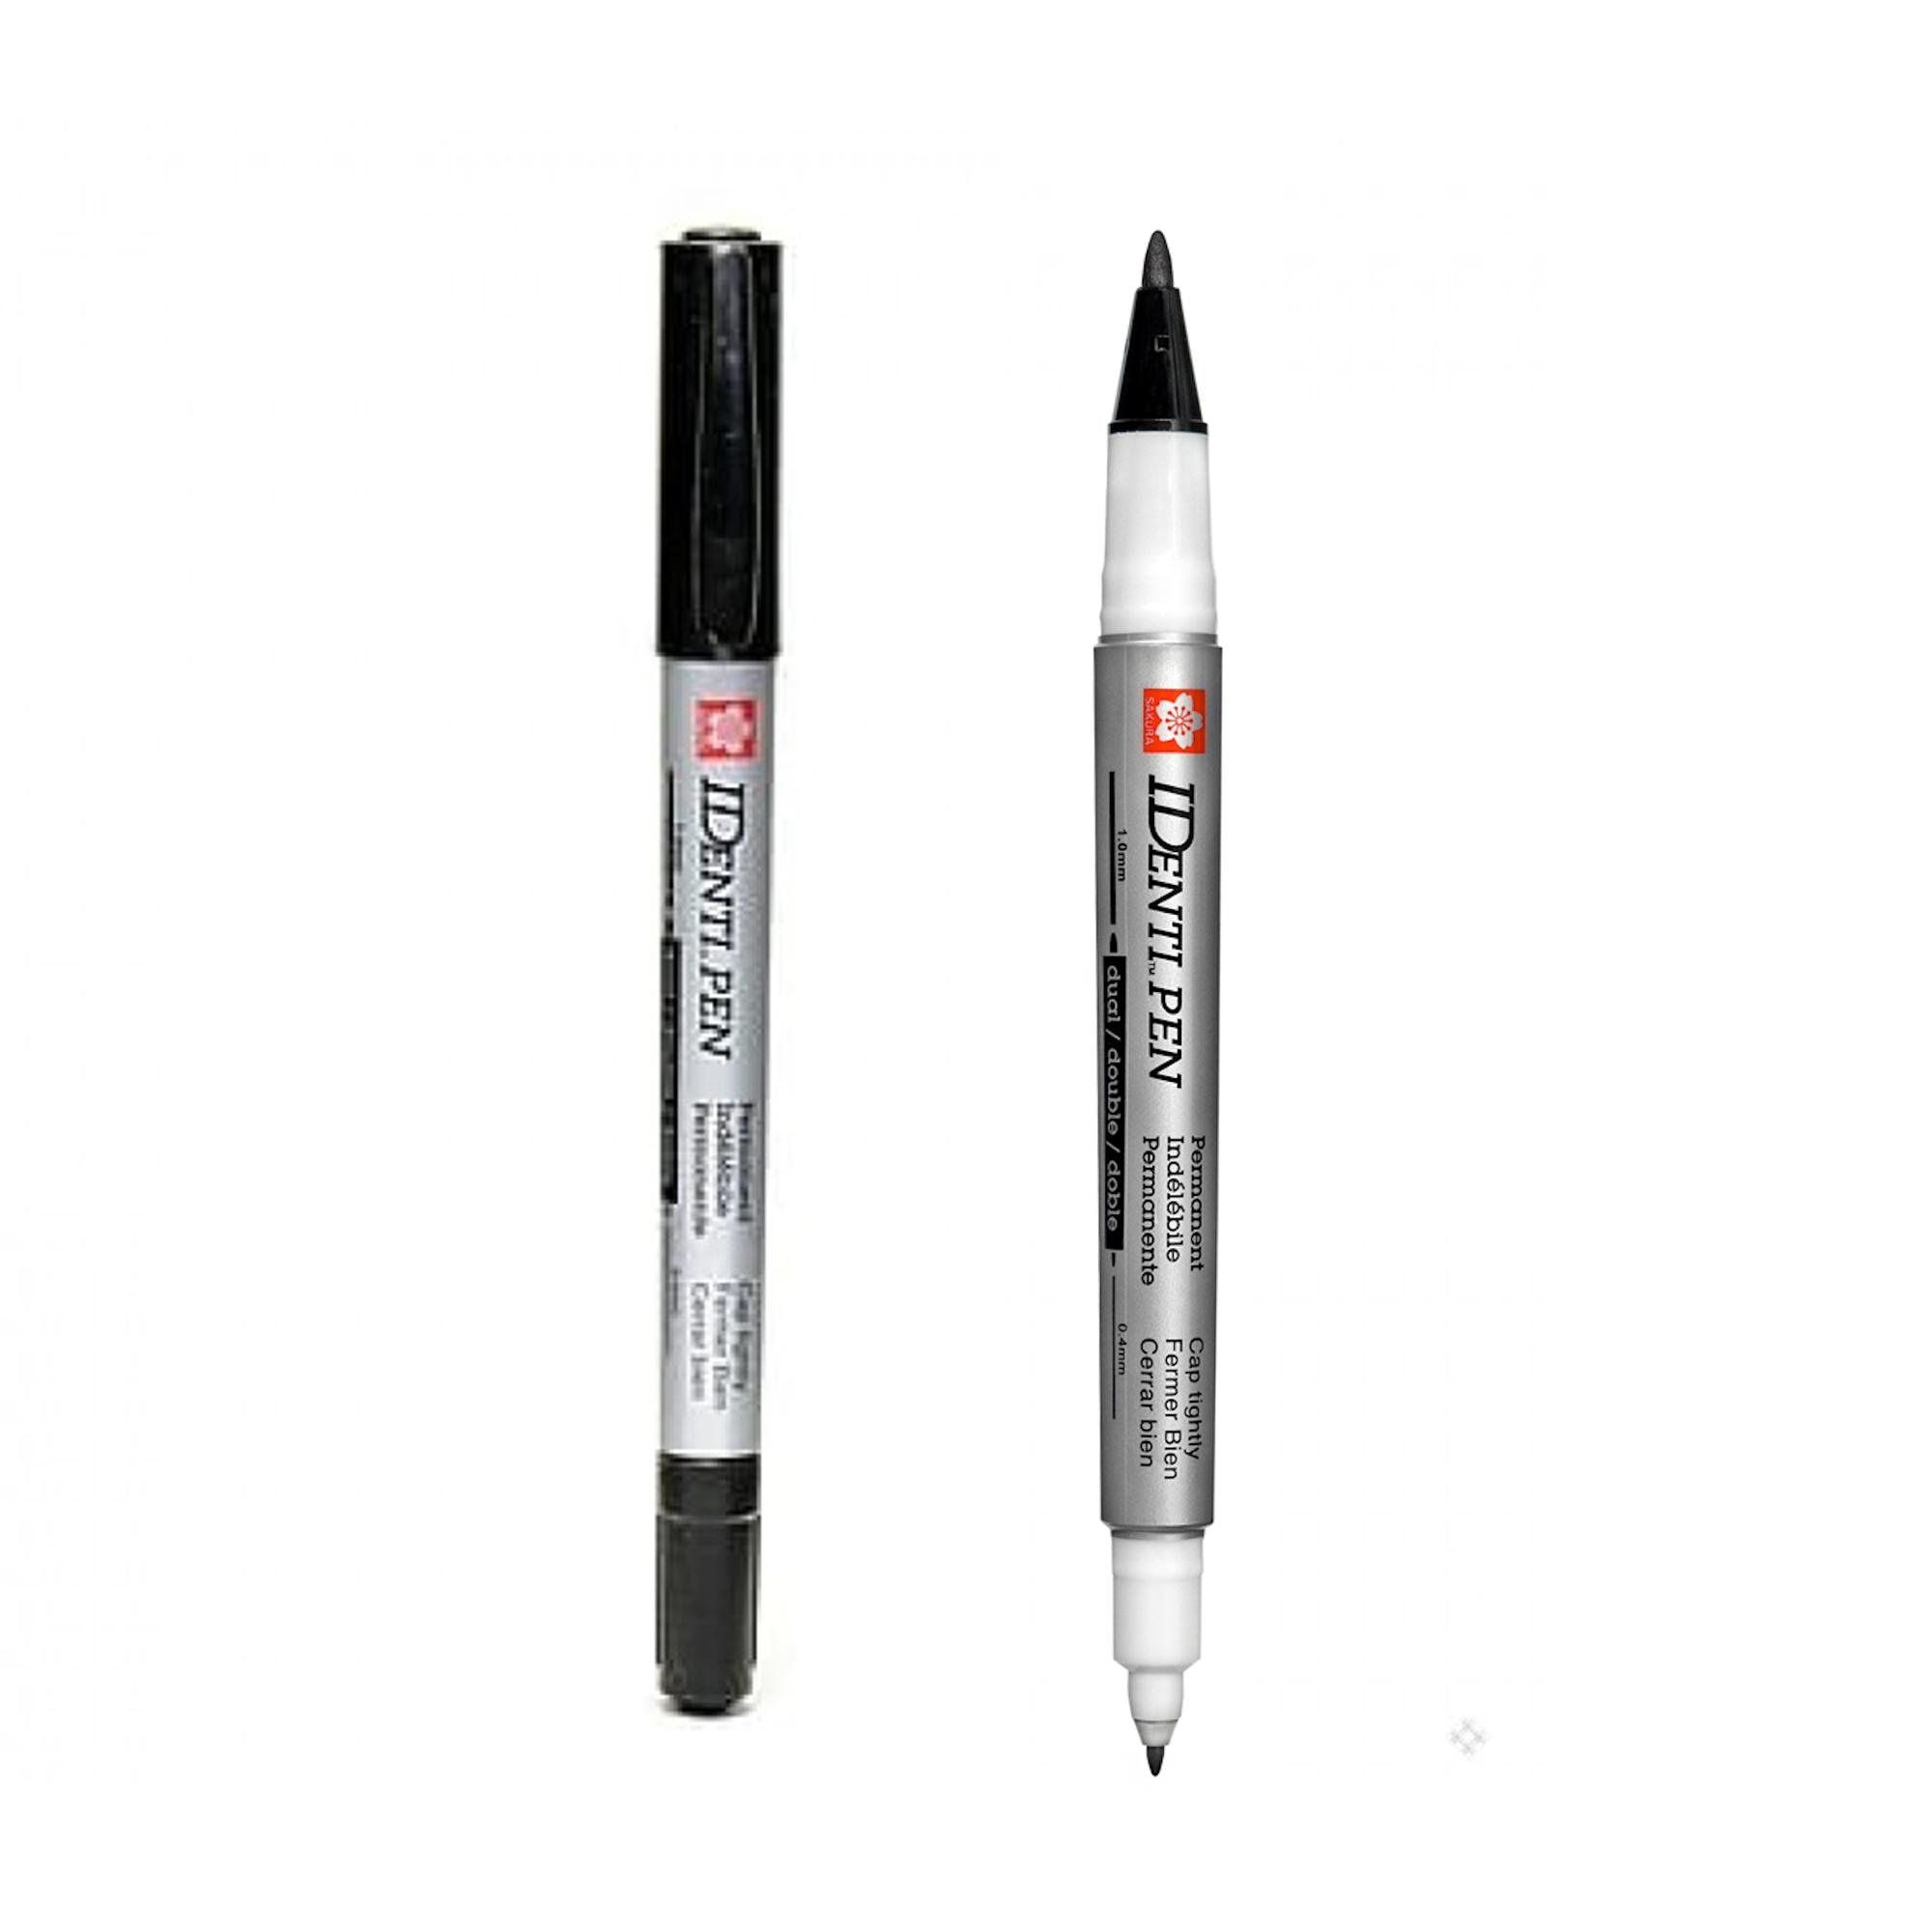 ปากกาไอเด็นติเพ็น 2 หัว SAKURA เขียนCD,เขียนไม้,หนัง,แก้ว,เซรามิค 1.0mm และ 0.4mm